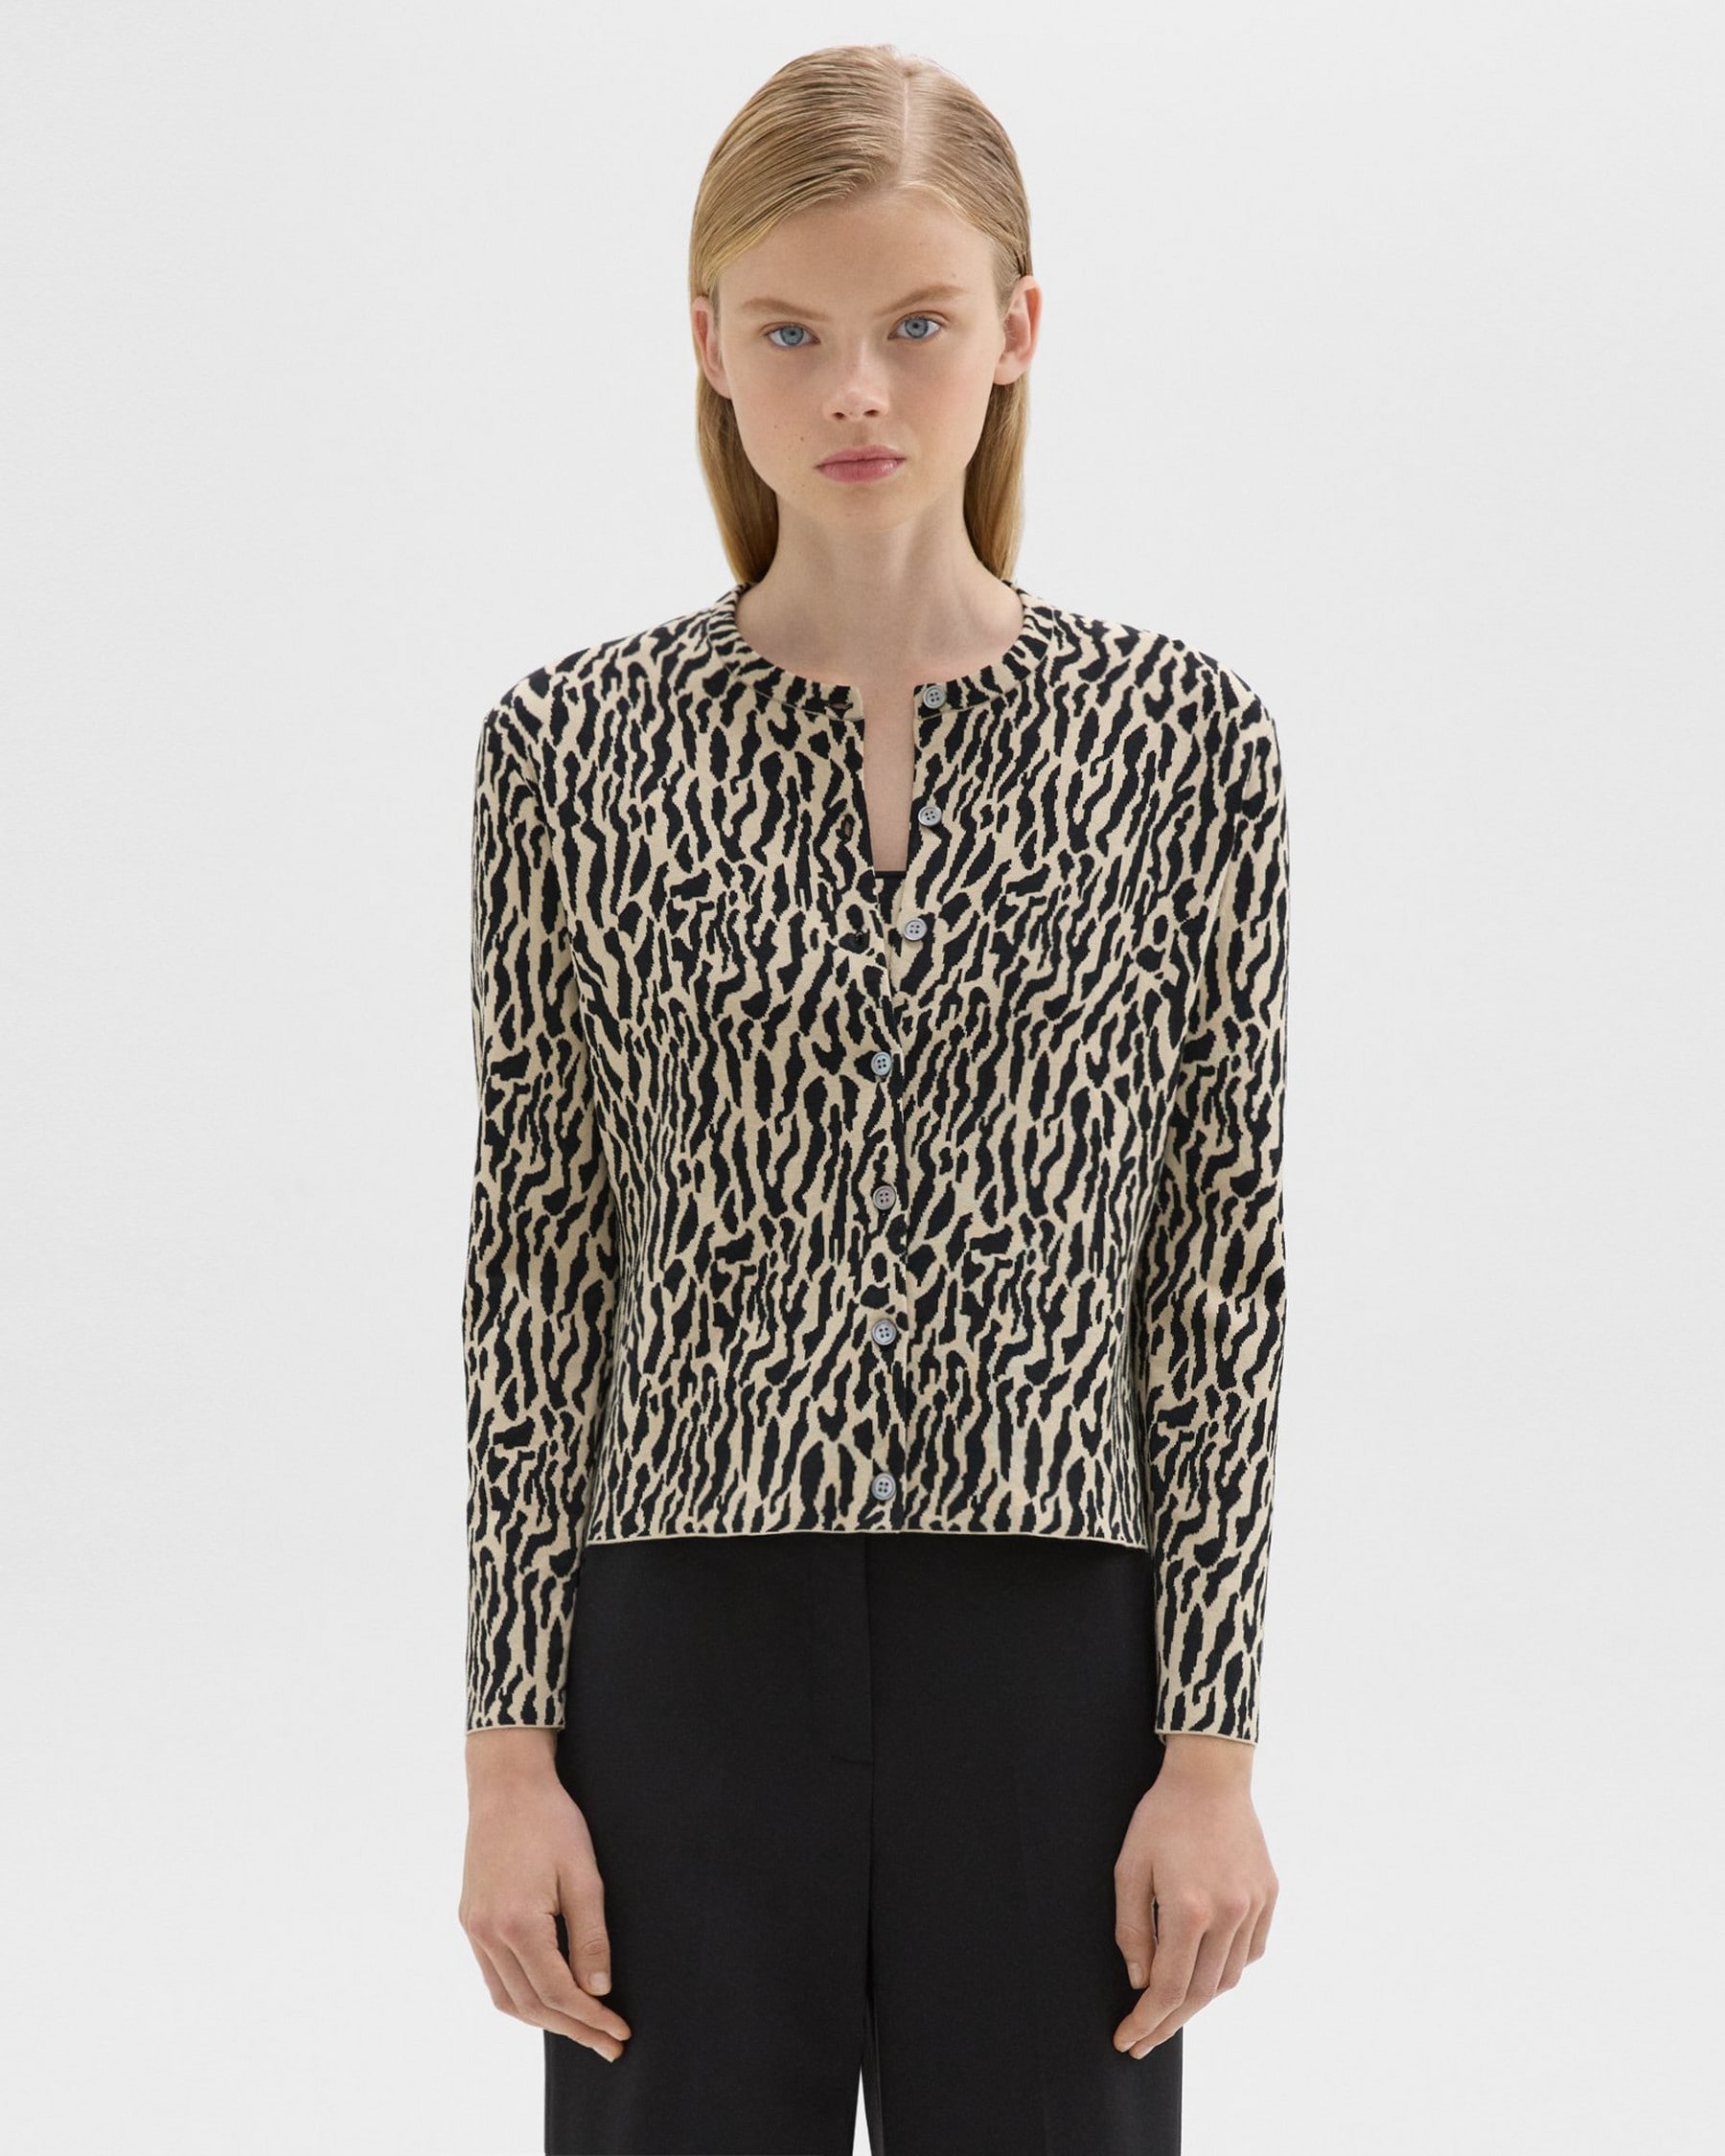 띠어리 Theory Leopard Jacquard Cardigan in Cotton Blend,DARK ECRU/BLACK